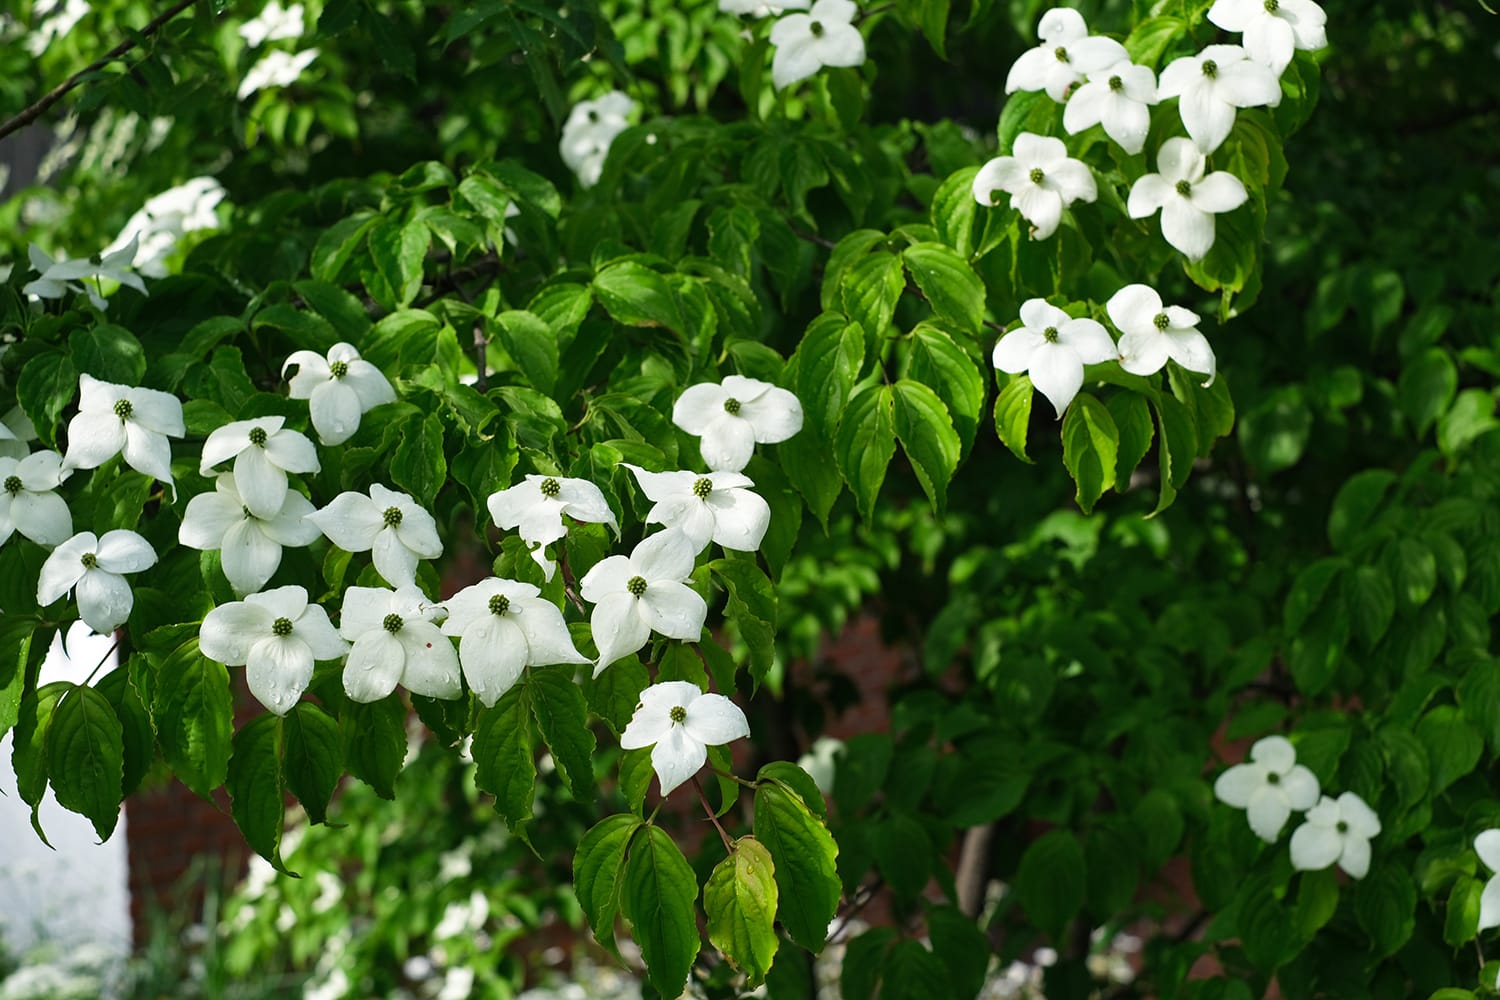 6月の札幌の庭で白い花咲くヤマボウシ